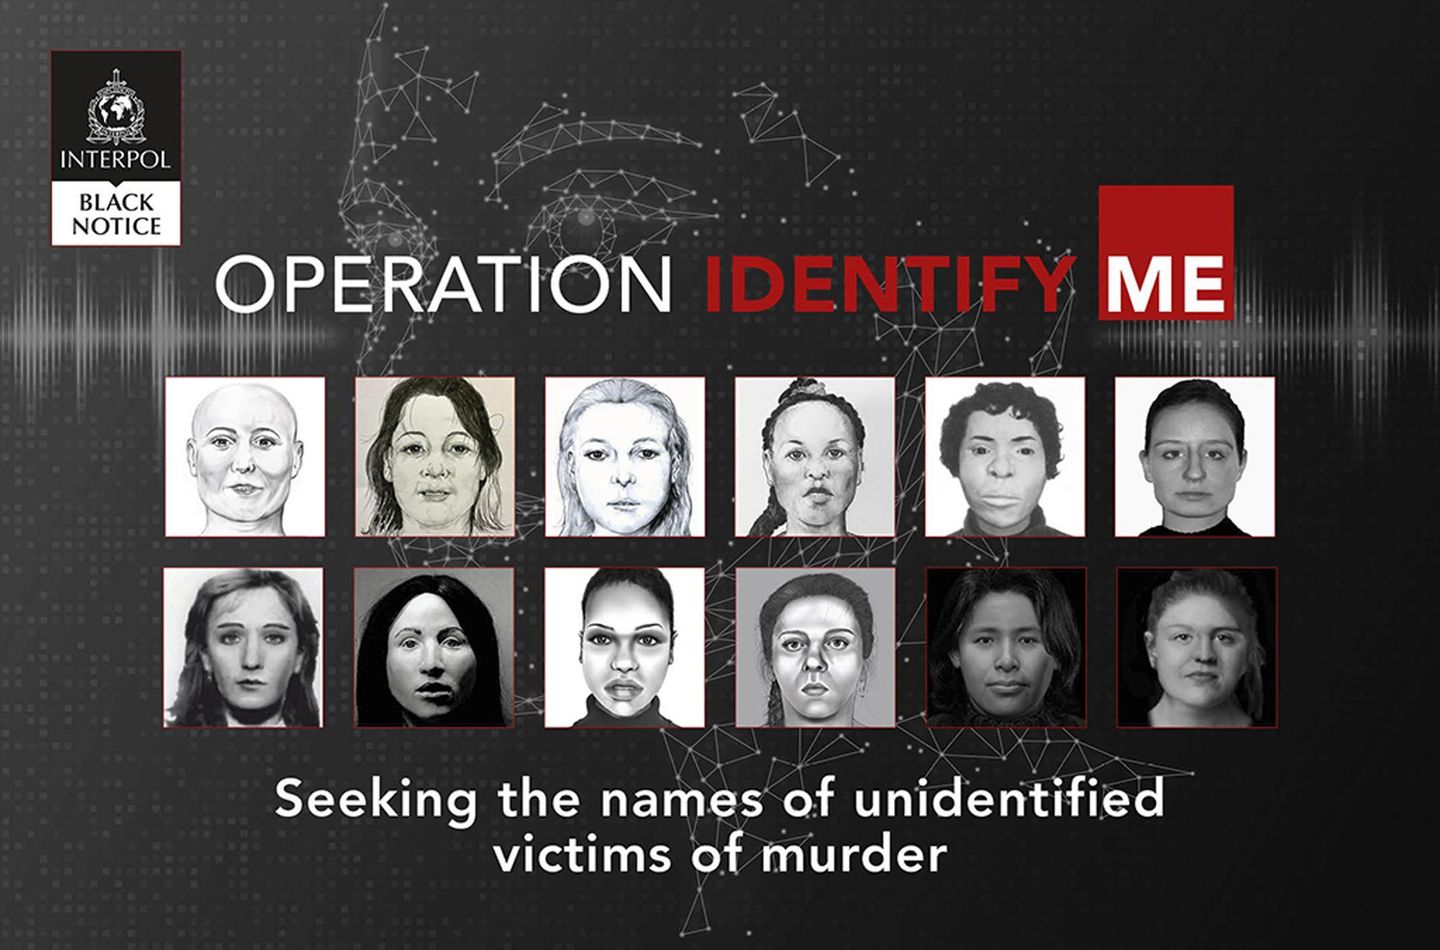 İsimsiz 22 kadın ölü: Interpol soğuk vakalarla ilgili ipucu arıyor